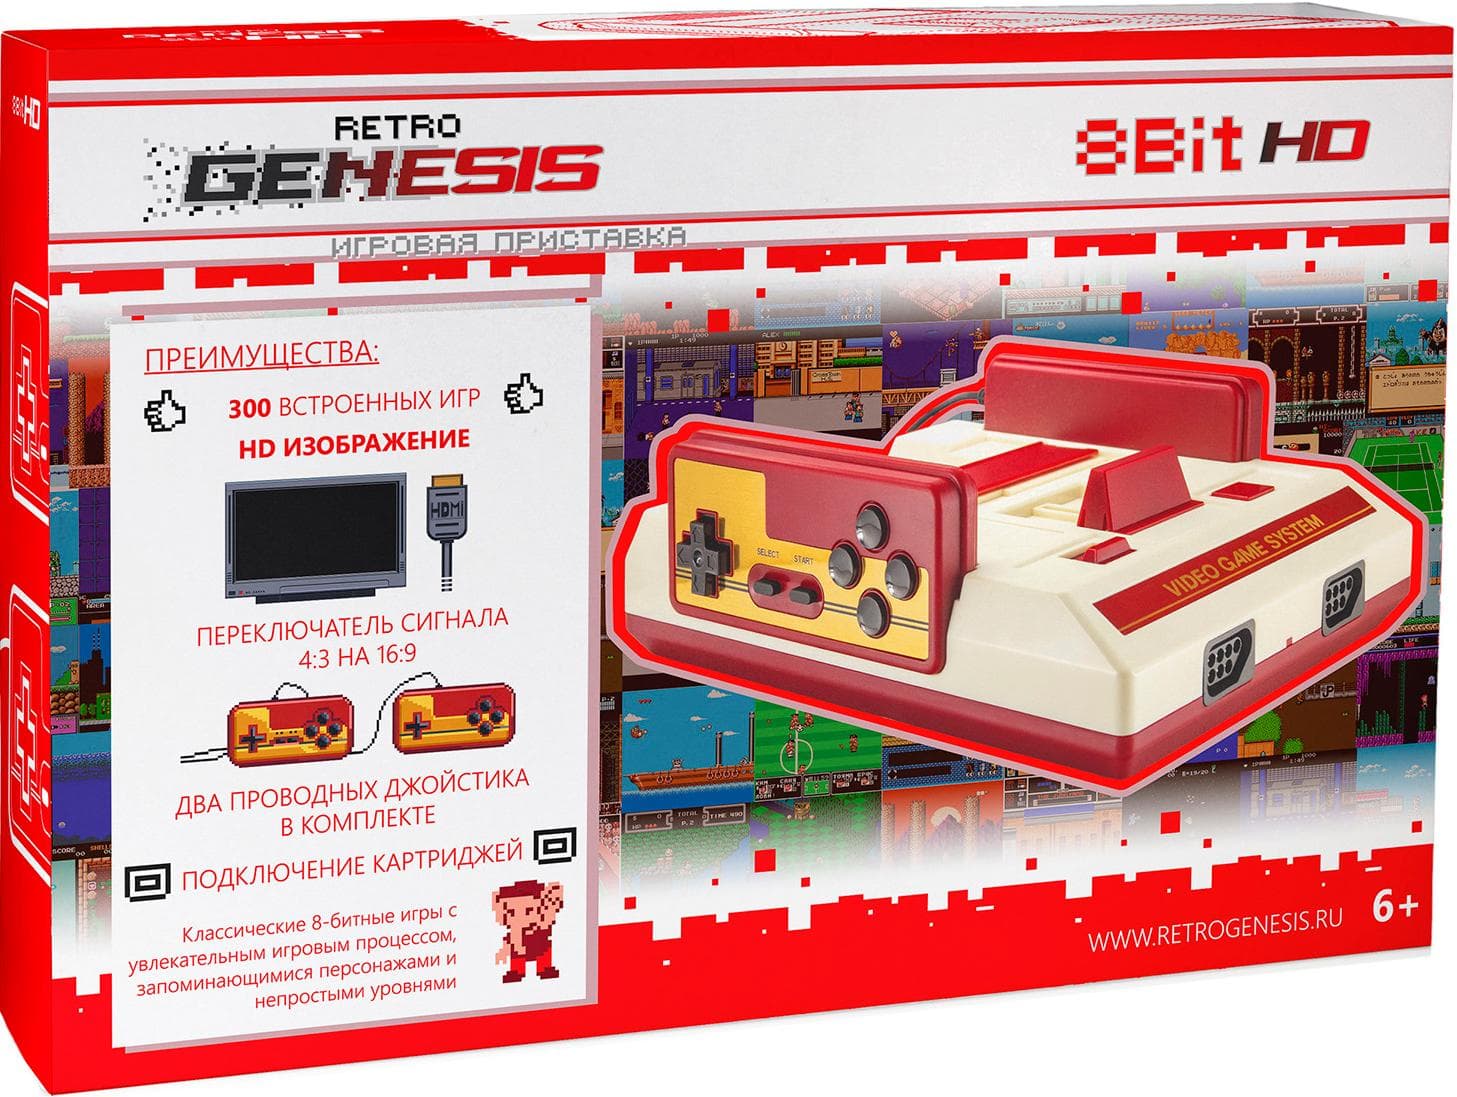 Генезис 8 бит. Игровая консоль Retro Genesis 300 игр. Игровая приставка Retro Genesis 8 bit Classic. Джойстик ретро Genesis 300 игр 8 бит Классик.